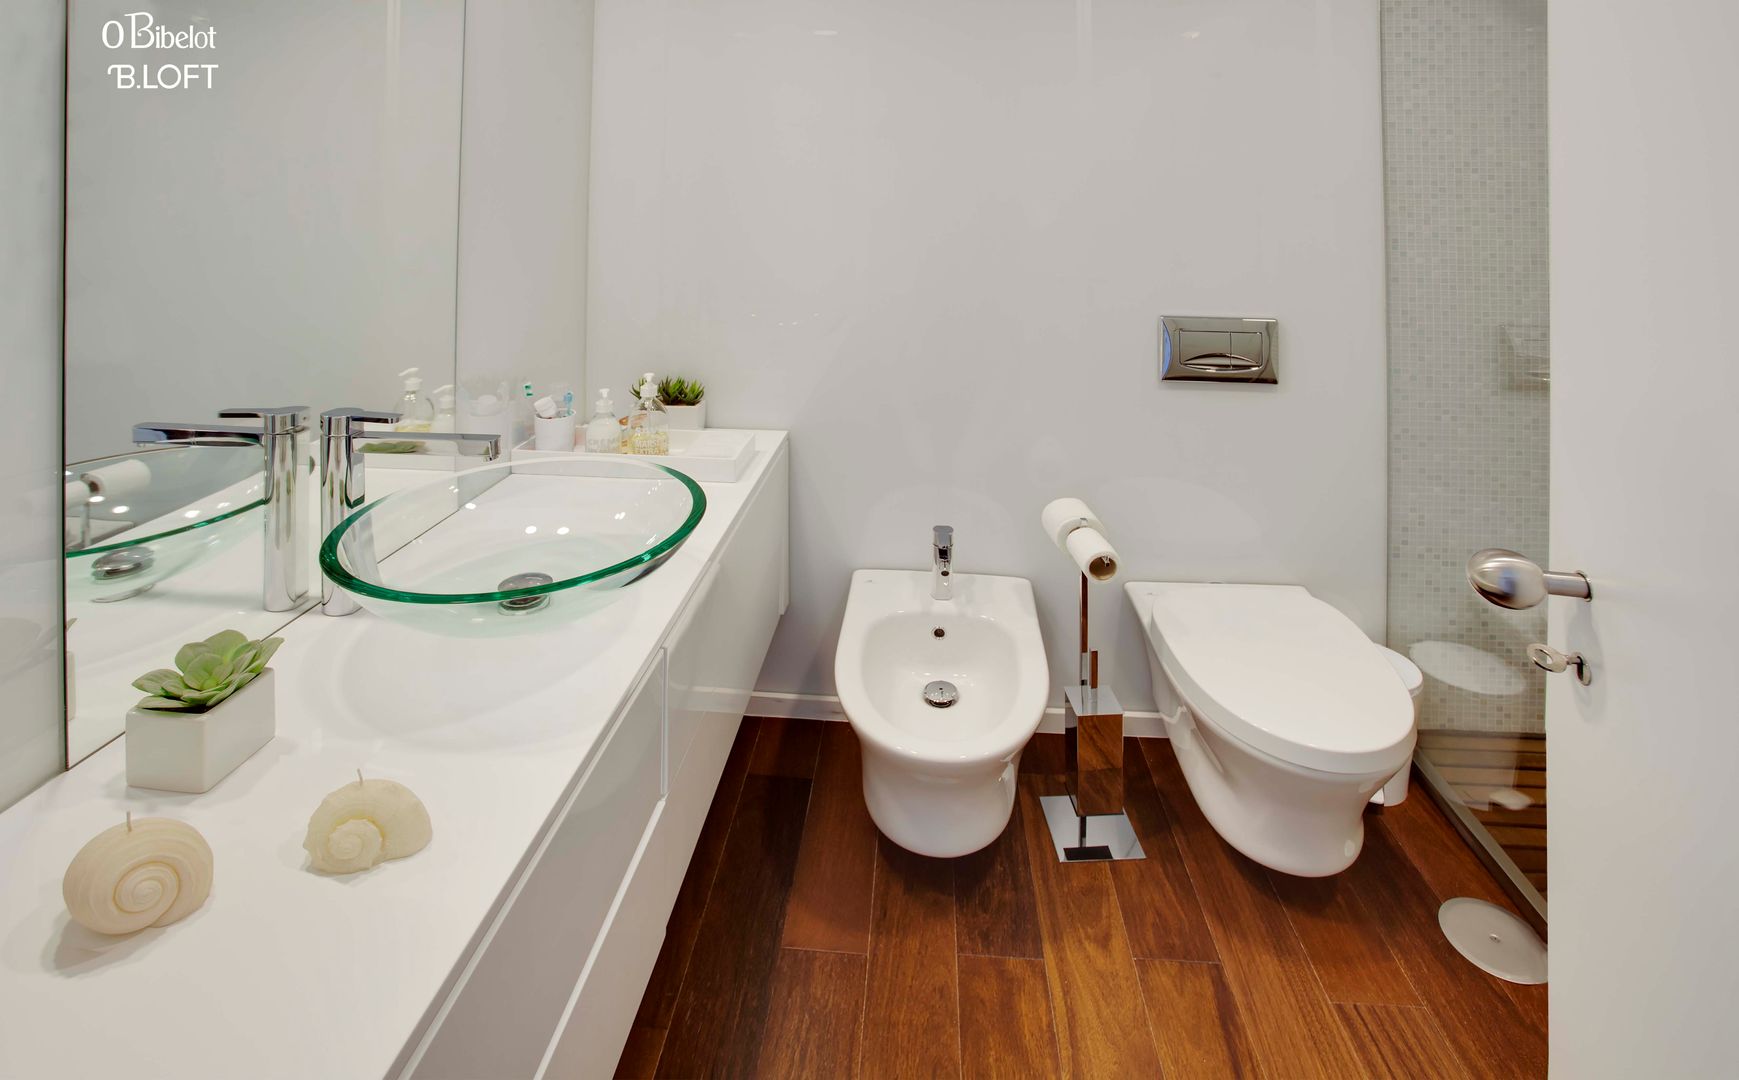 2015, Decoração de Apartamento BI, B.loft B.loft Casas de banho minimalistas